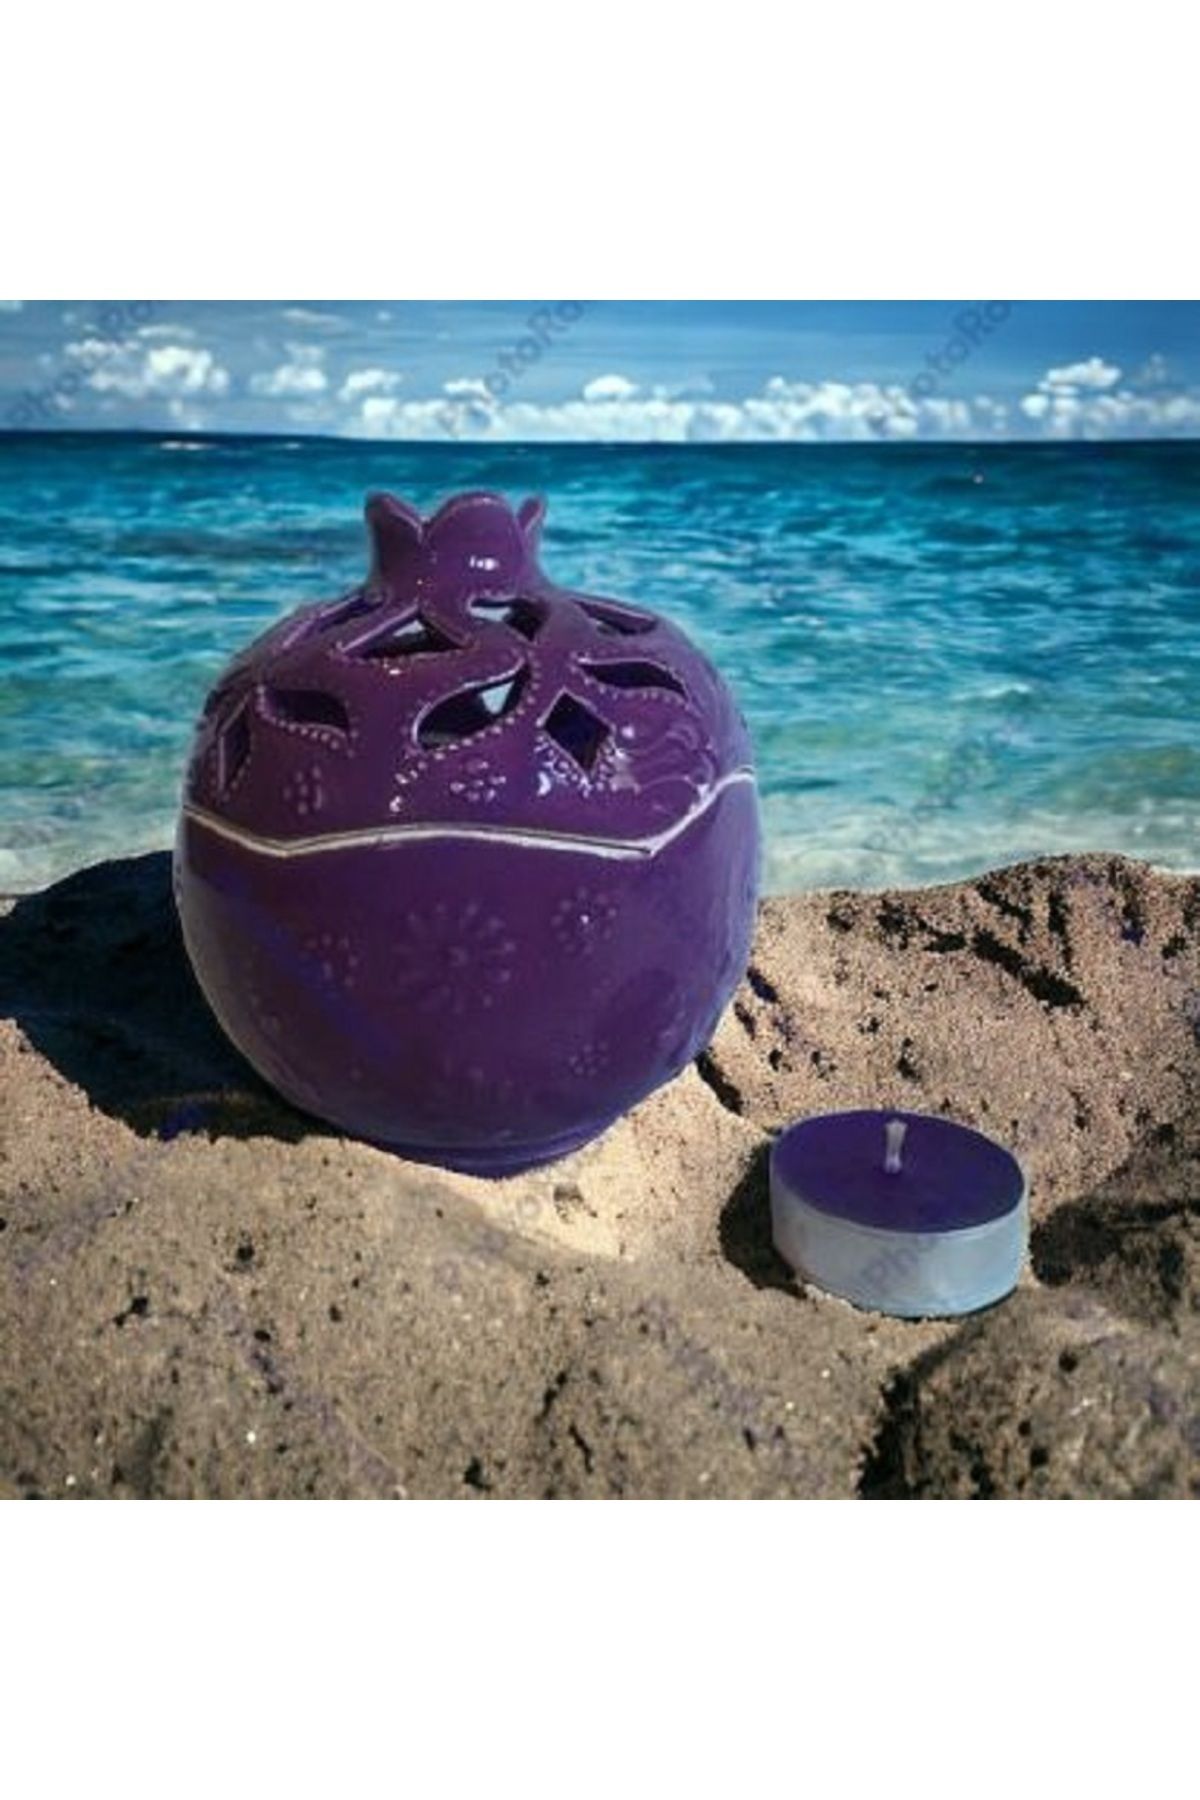 MSTR Art Purple Pomegranate Candle Holder Kütahya Tile Handmade Ceramic - Mor Nar Mumluk Kütahya Çinisi